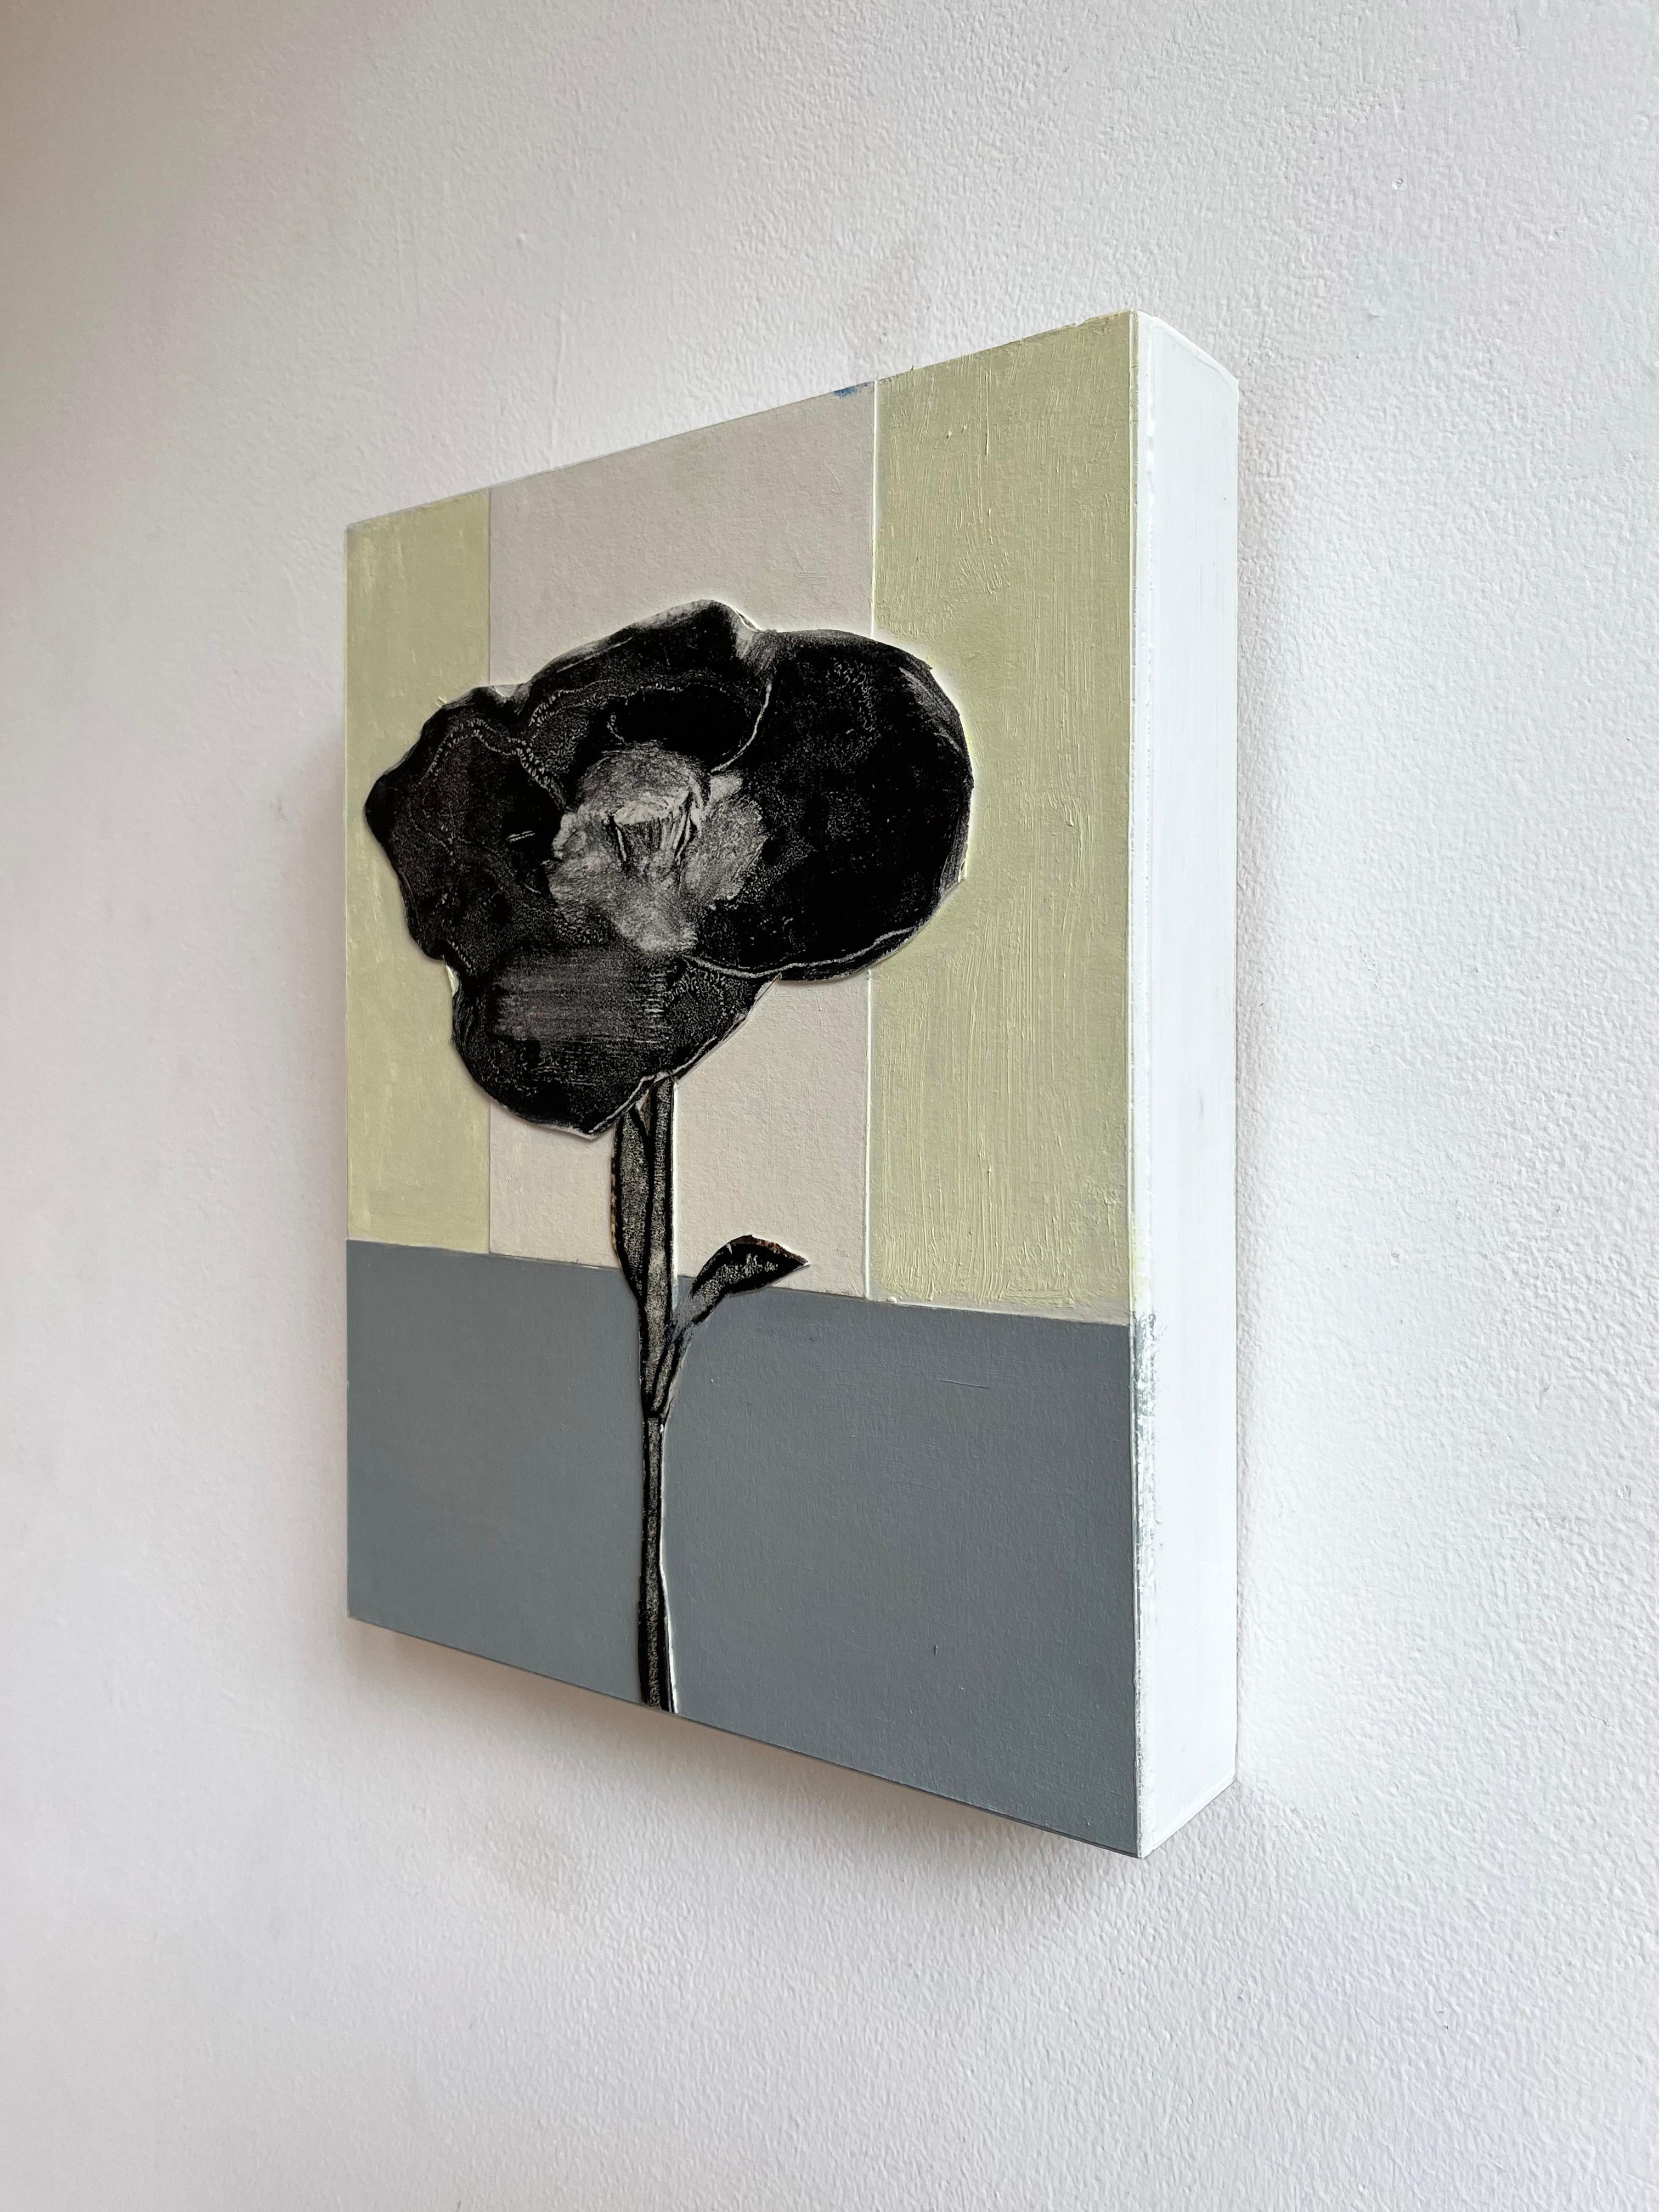 Schwarzer Mohn (kleines Stillleben, Blume auf gestreiftem pastellfarbenem Hintergrund) (Zeitgenössisch), Mixed Media Art, von David Konigsberg